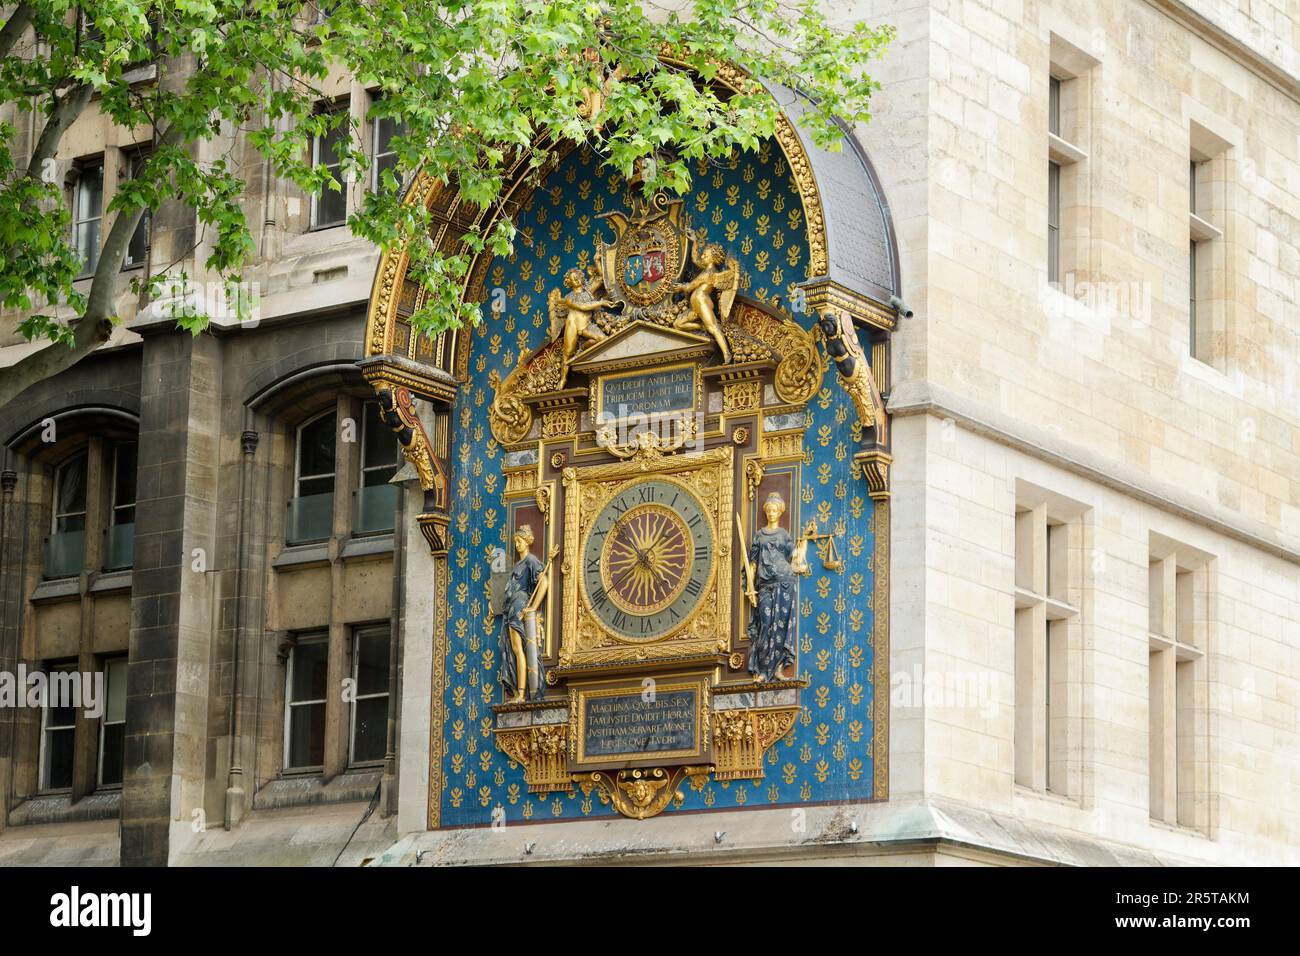 The medieval Clock Tower of the Palais de la Cité (Tour-de-l'Horloge) - detail of the first public clock in Paris (1370) - France Stock Photo